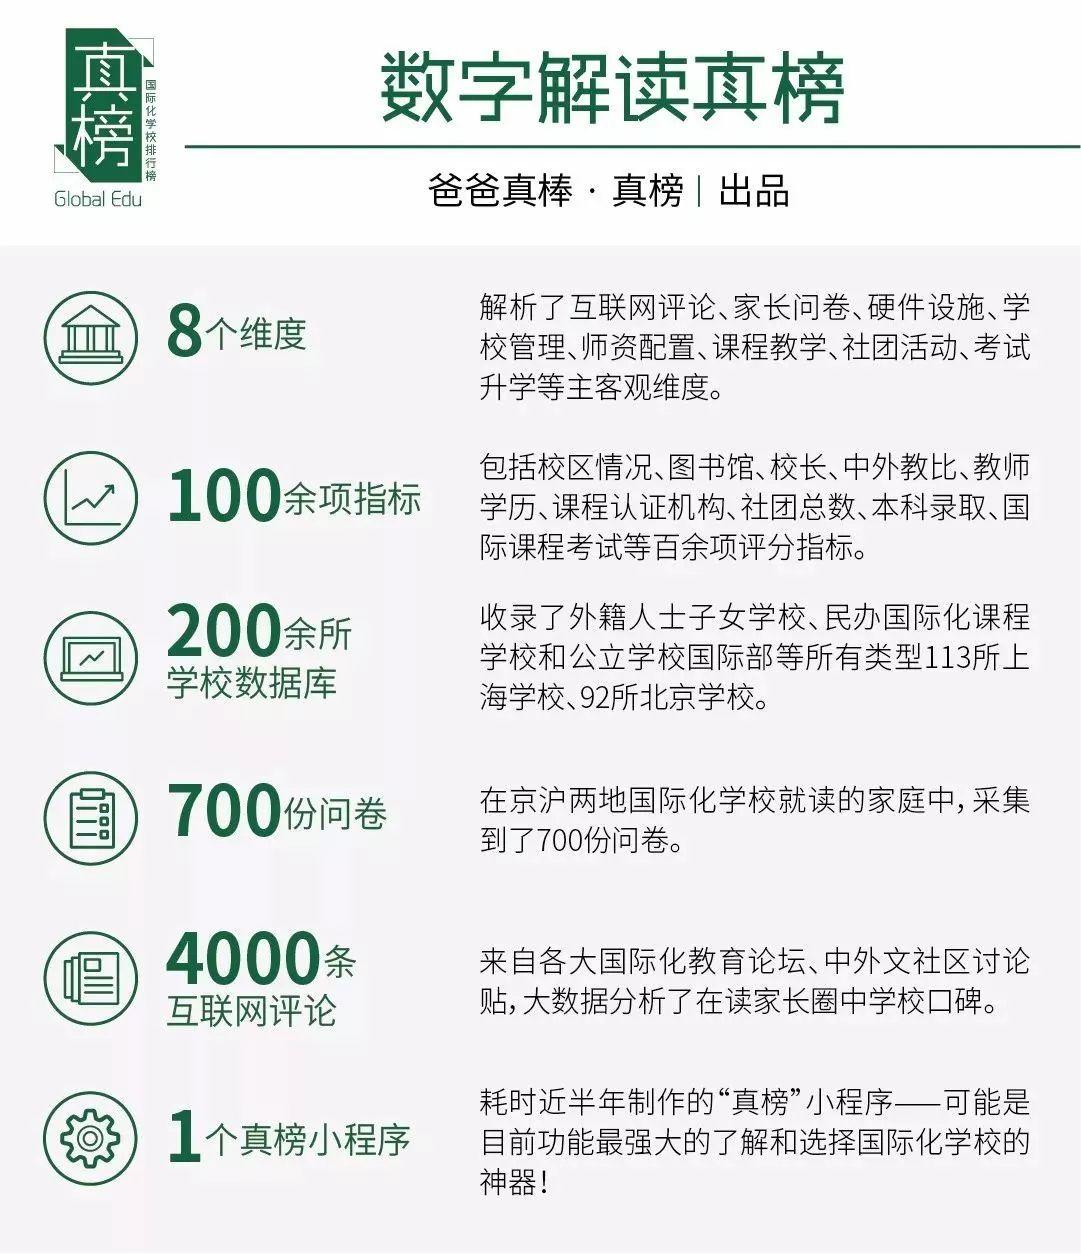 京沪PK -- 谁是国际化教育第一城(2017年数据) 国际学校 数据 第2张